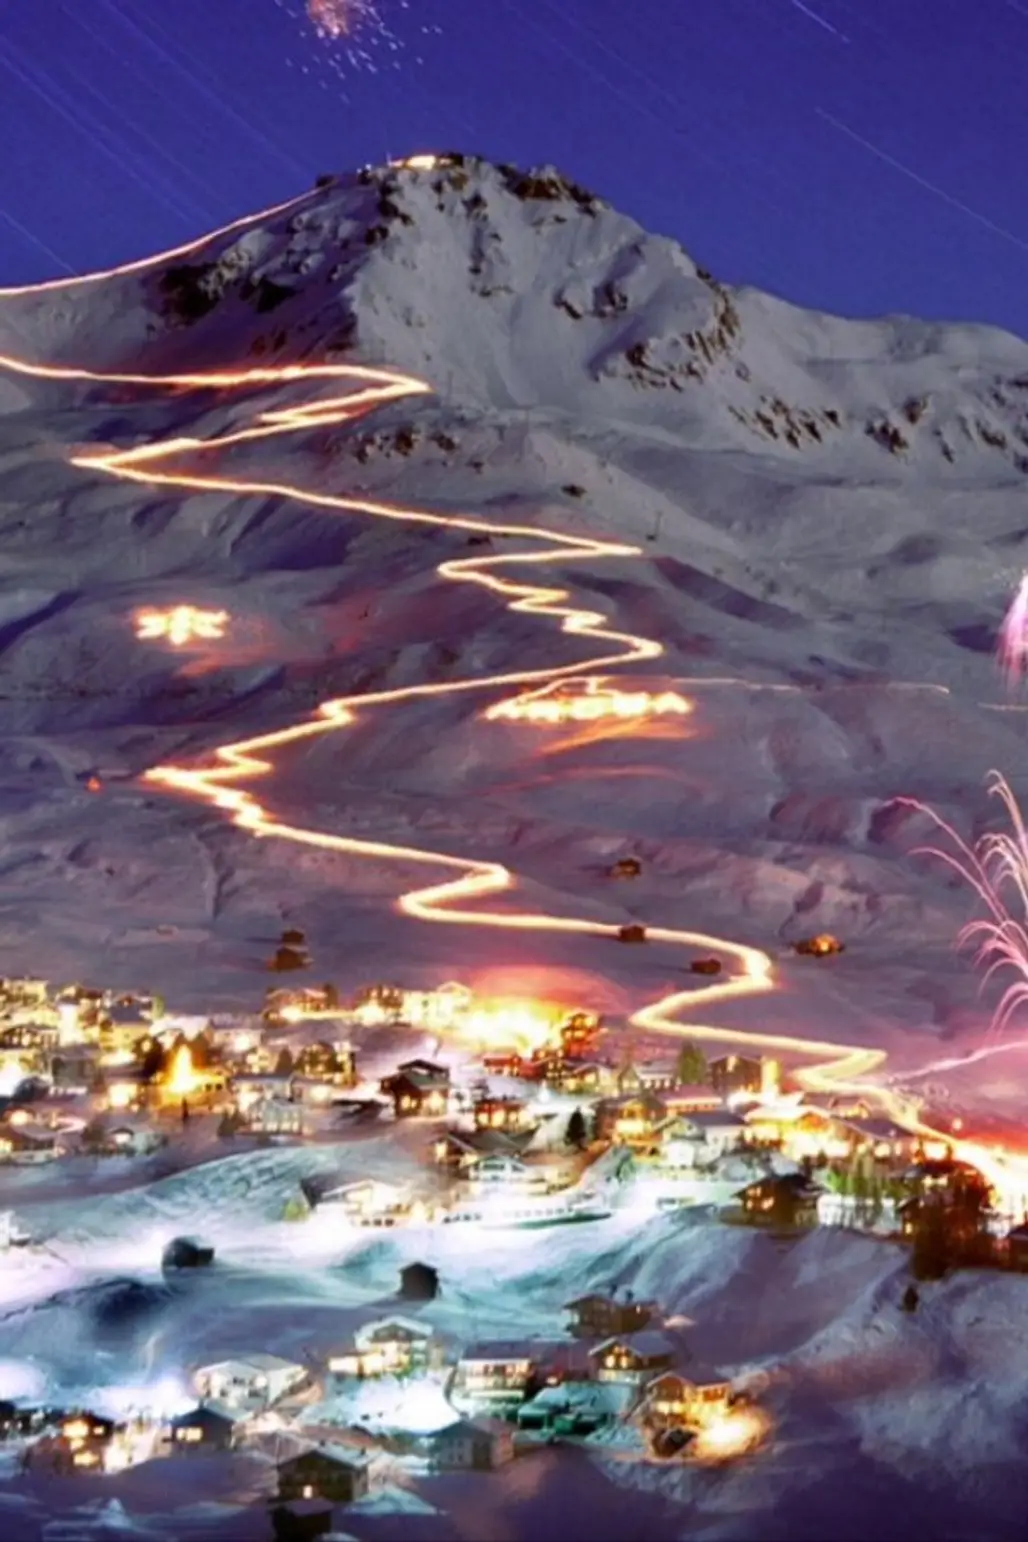 Arosa Ski Resort, Switzerland